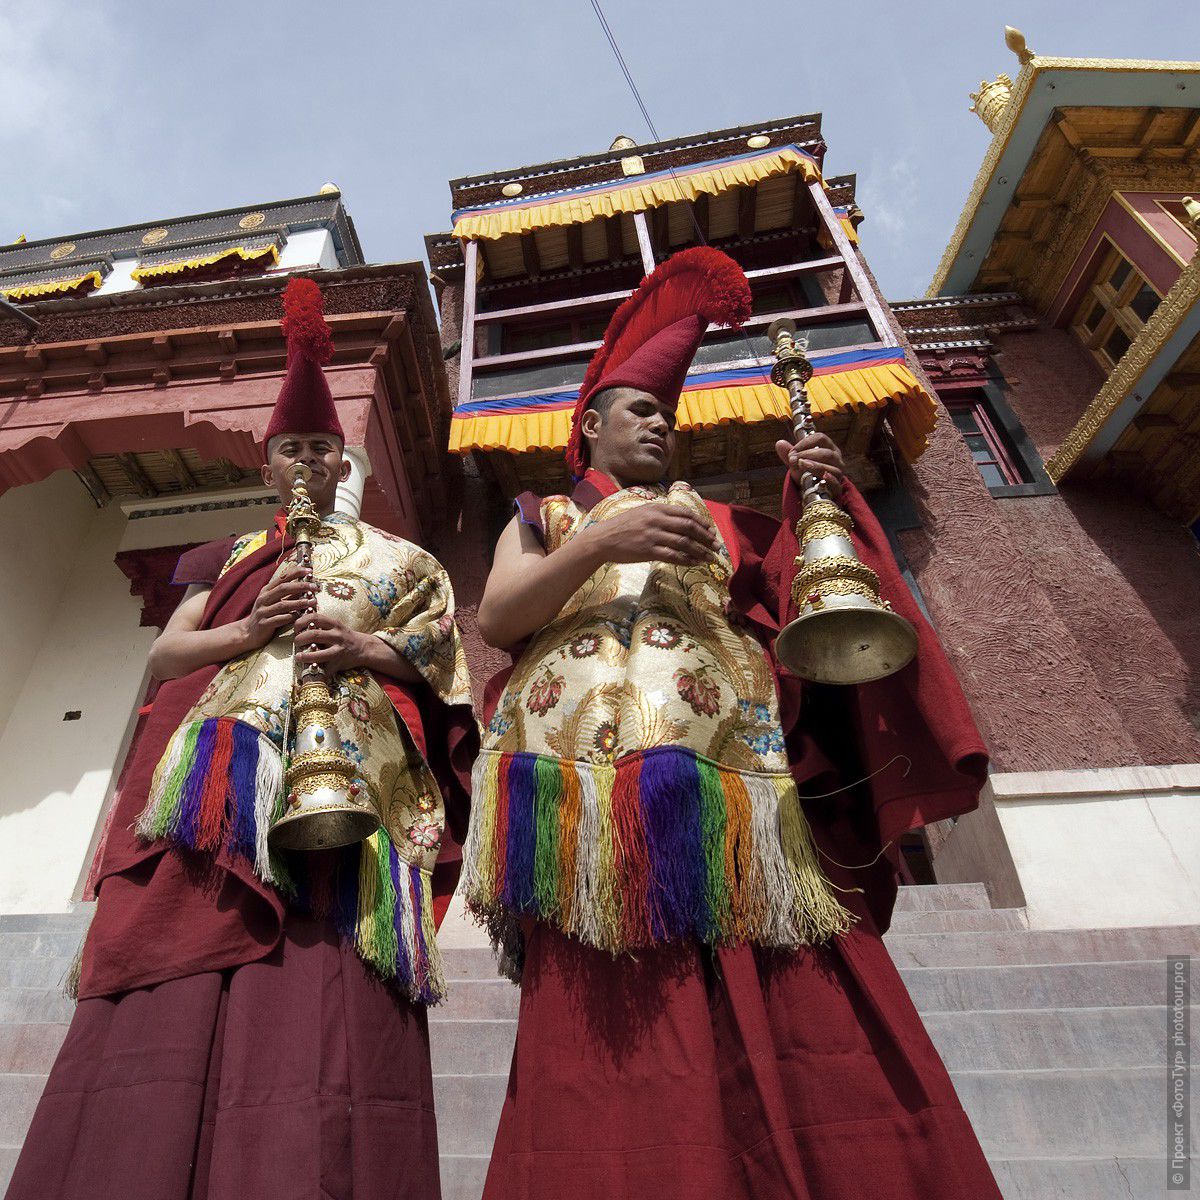 Фотография монахов с трубами на открытии Праздника Мато Награнг, монастырь Мато, Ладакх, фототур в Тибет.